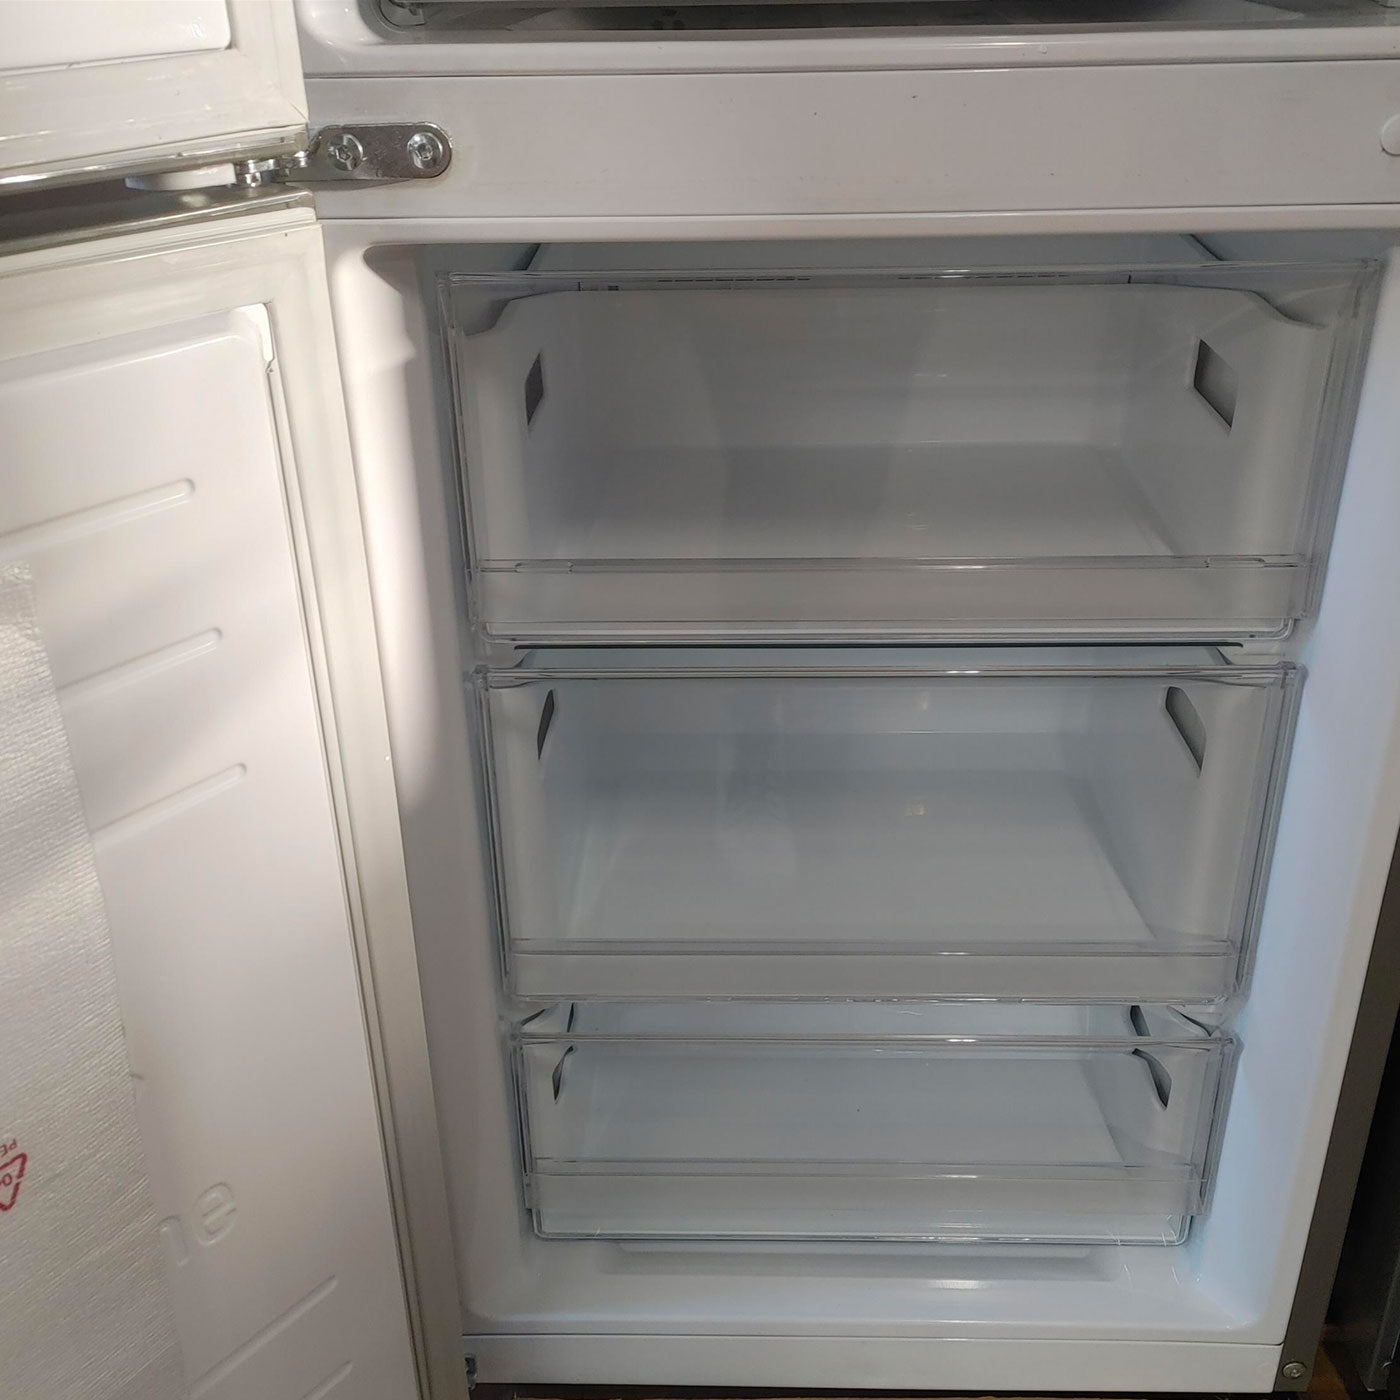 LG GBP62PZNAC.APZQEUR frigorifero con congelatore Libera installazione 384 LA Acciaio inox